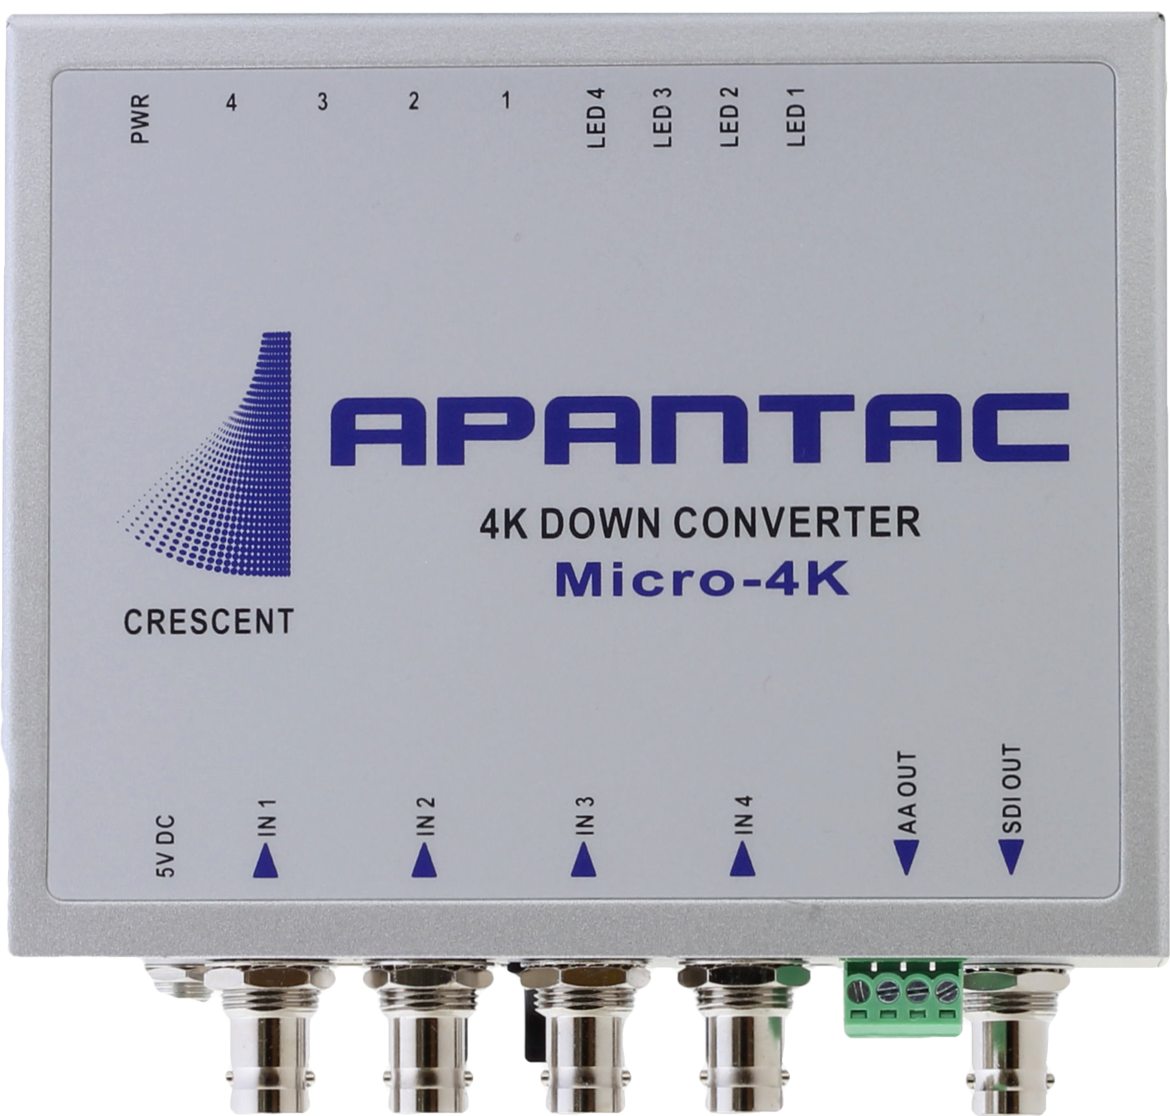 APANTAC-Micro-4K-Converter top